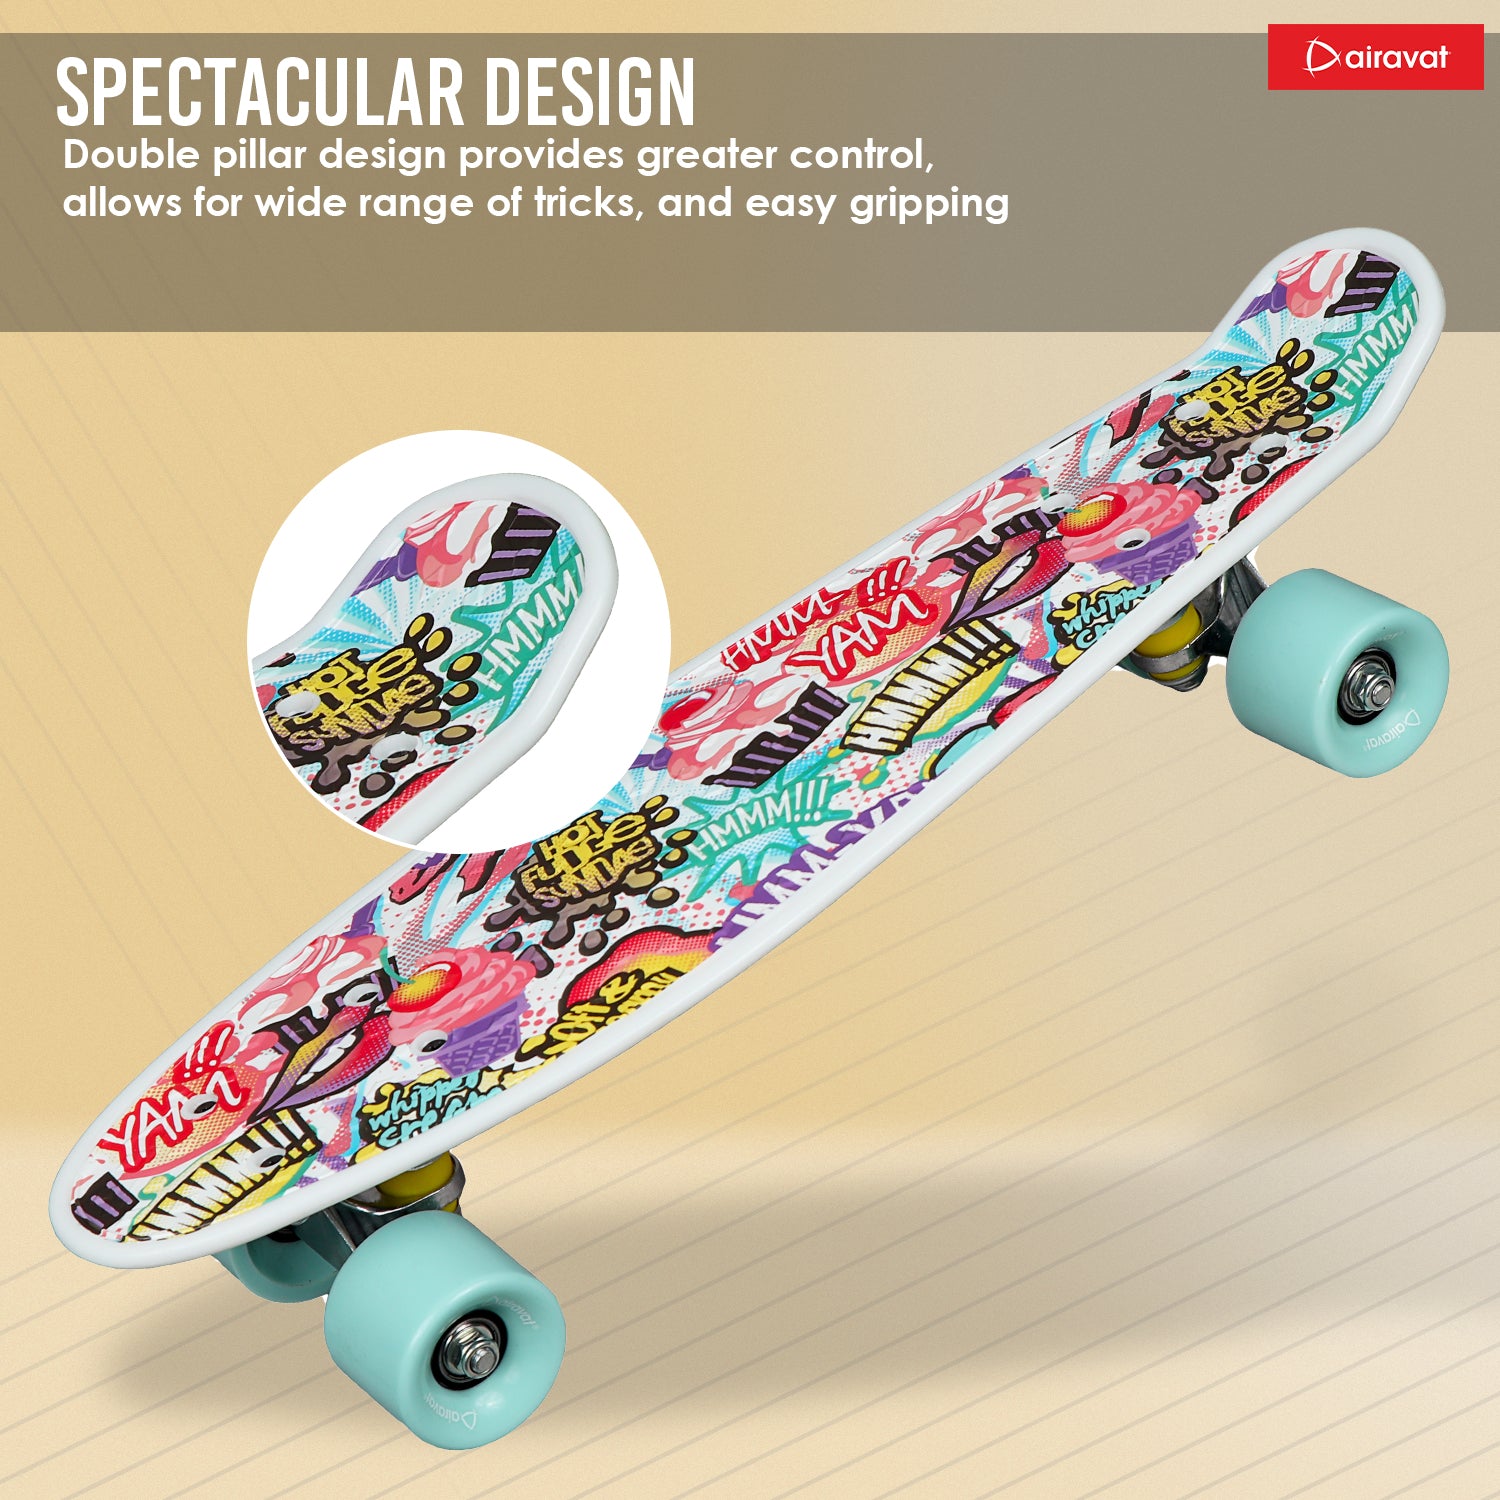 7811-skateboard-style-6-spectacular-design